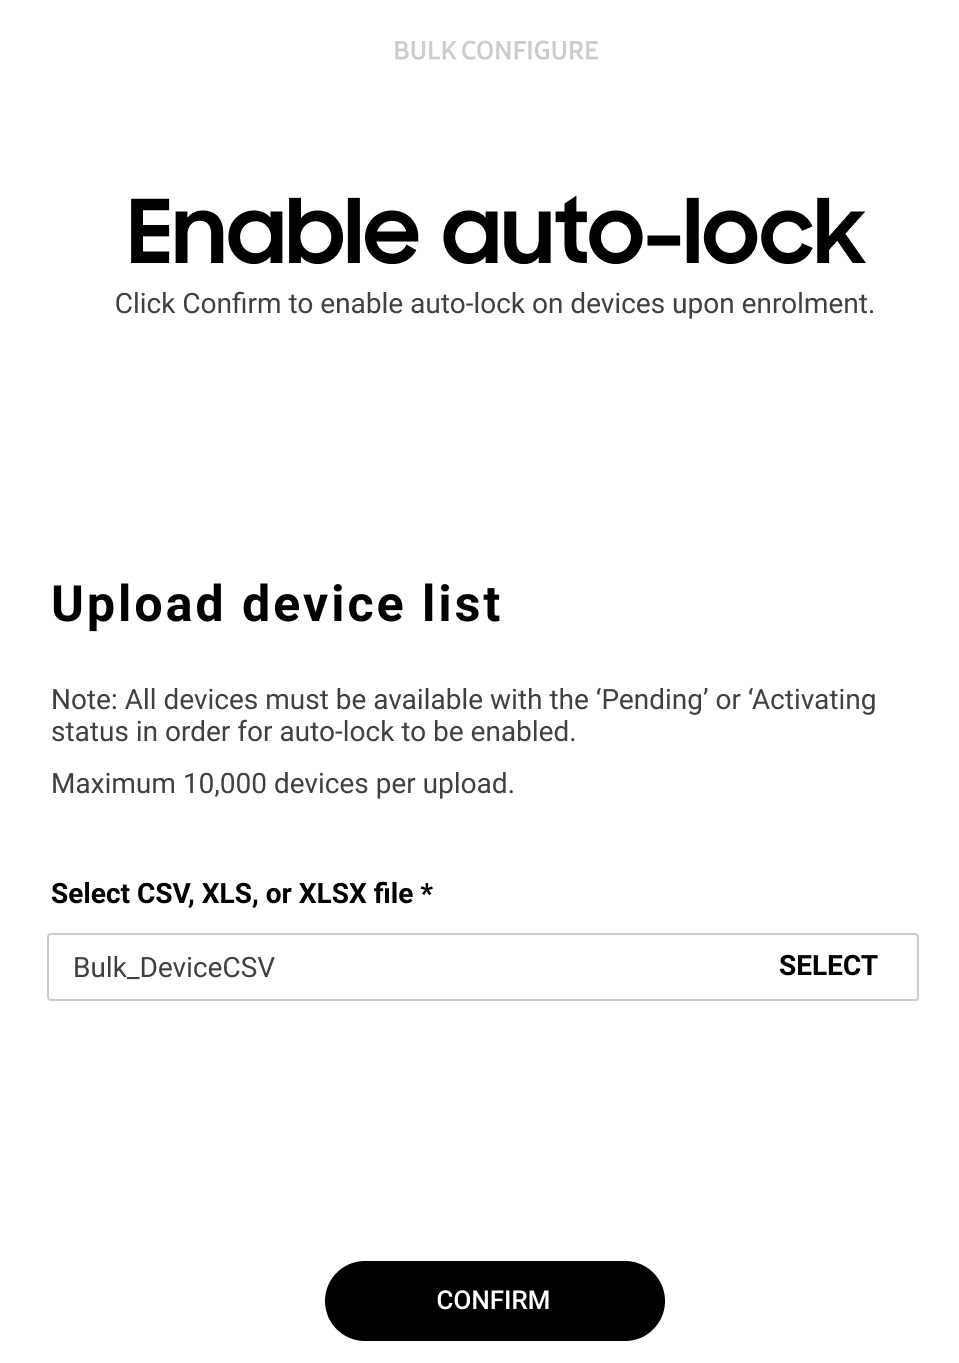 Enable auto-lock in bulk screen.